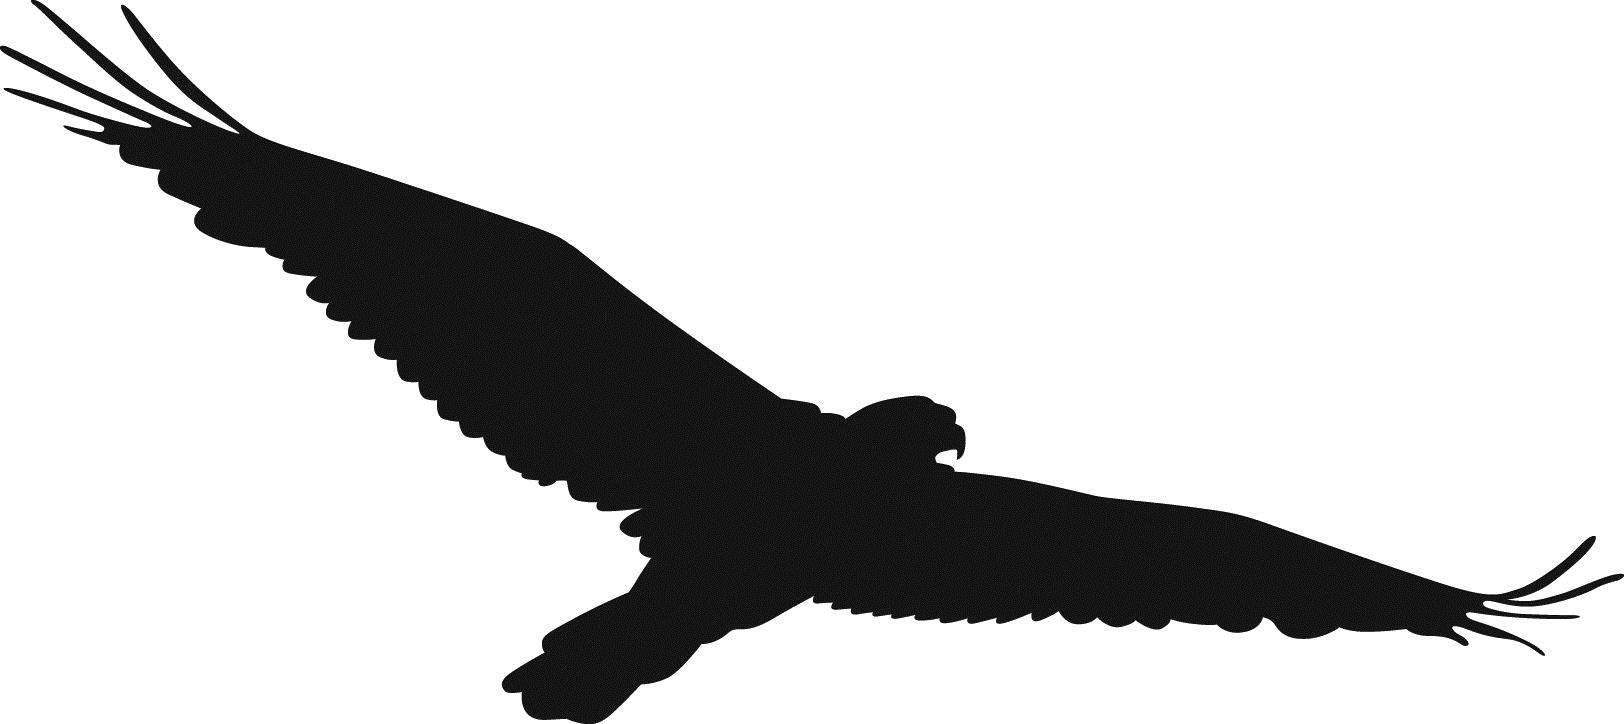 Hawk clip art at vector clip .